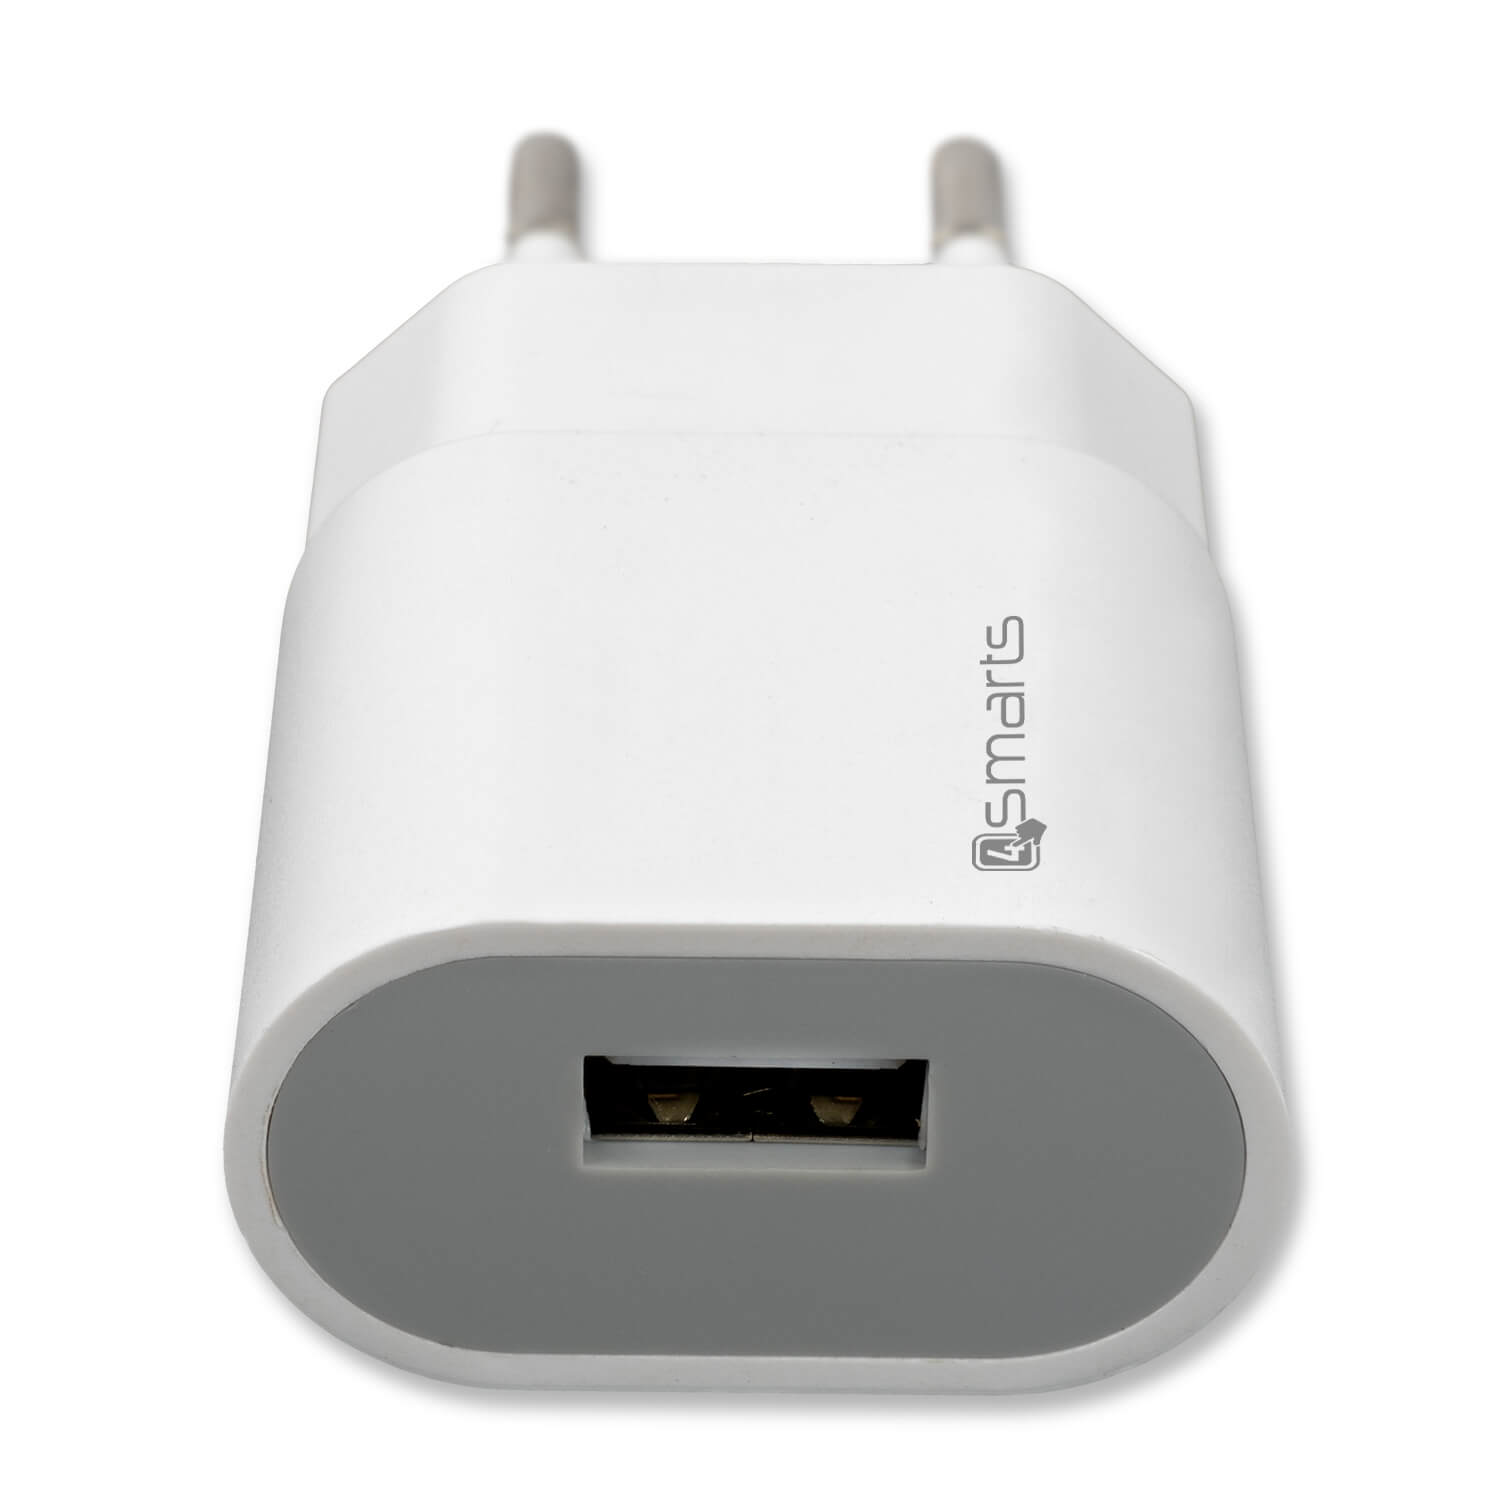 Wordt erger Contract melk wit iPhone USB adapter 5W (gecertificeerd) kopen? - Morgen in huis | Partly